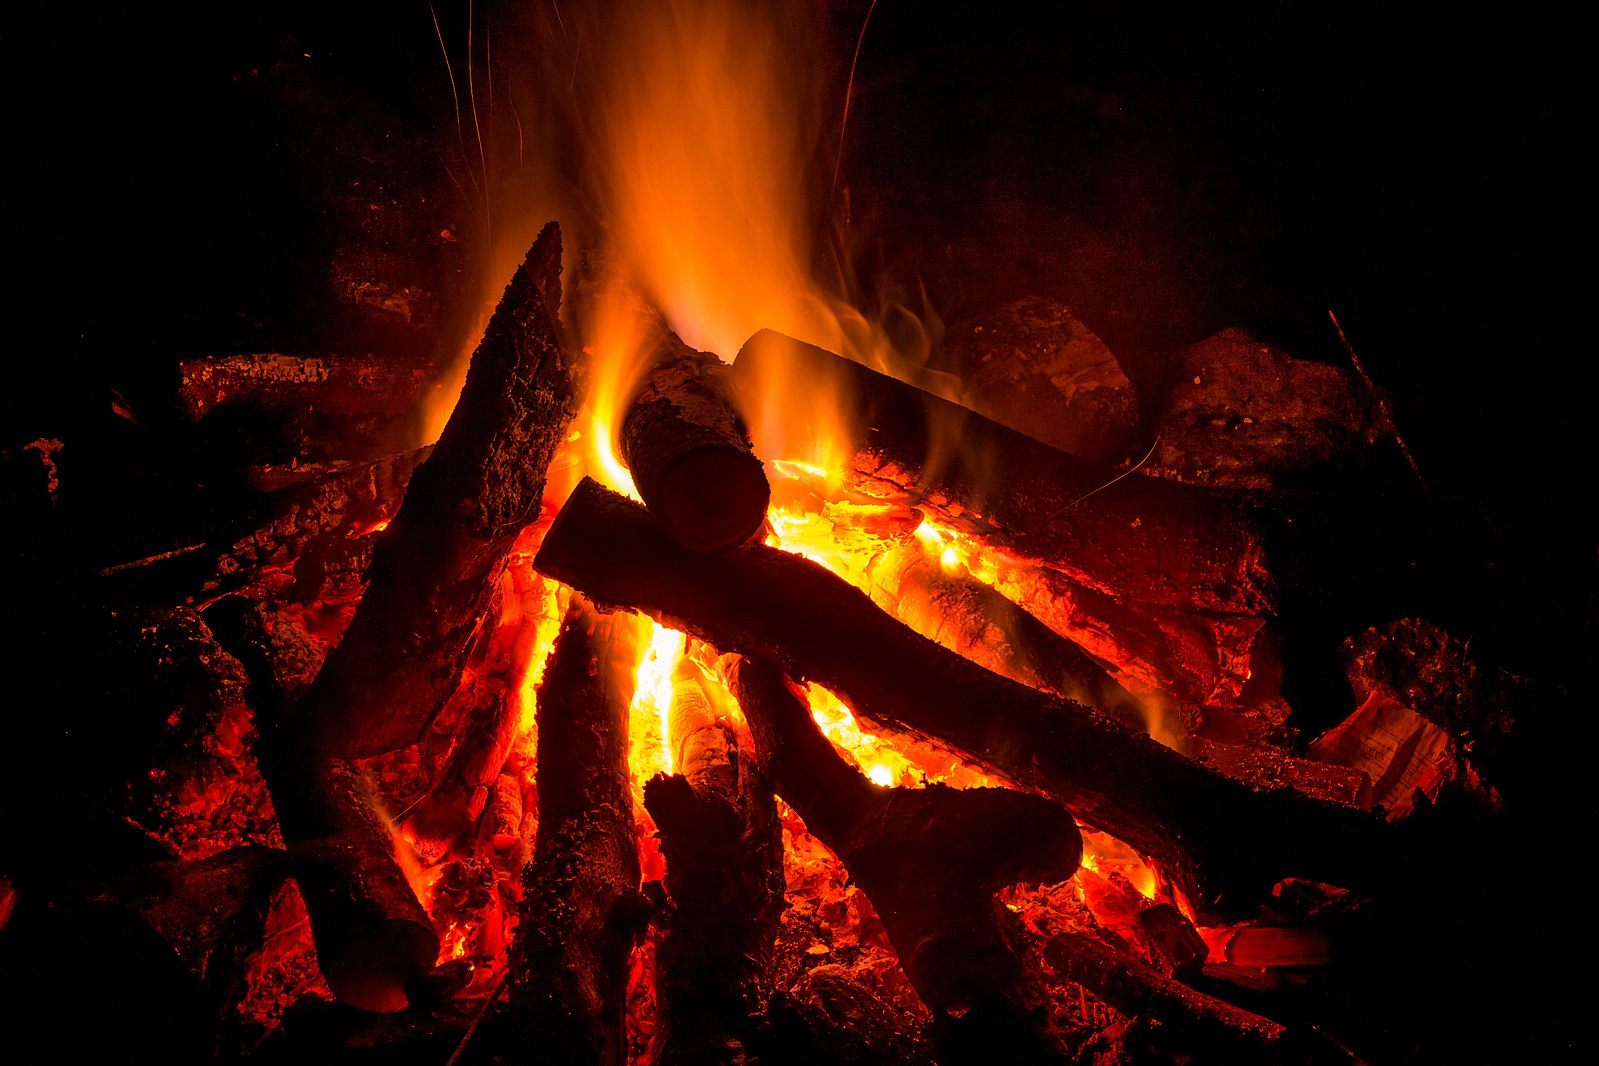 Logs of wood lit on fire